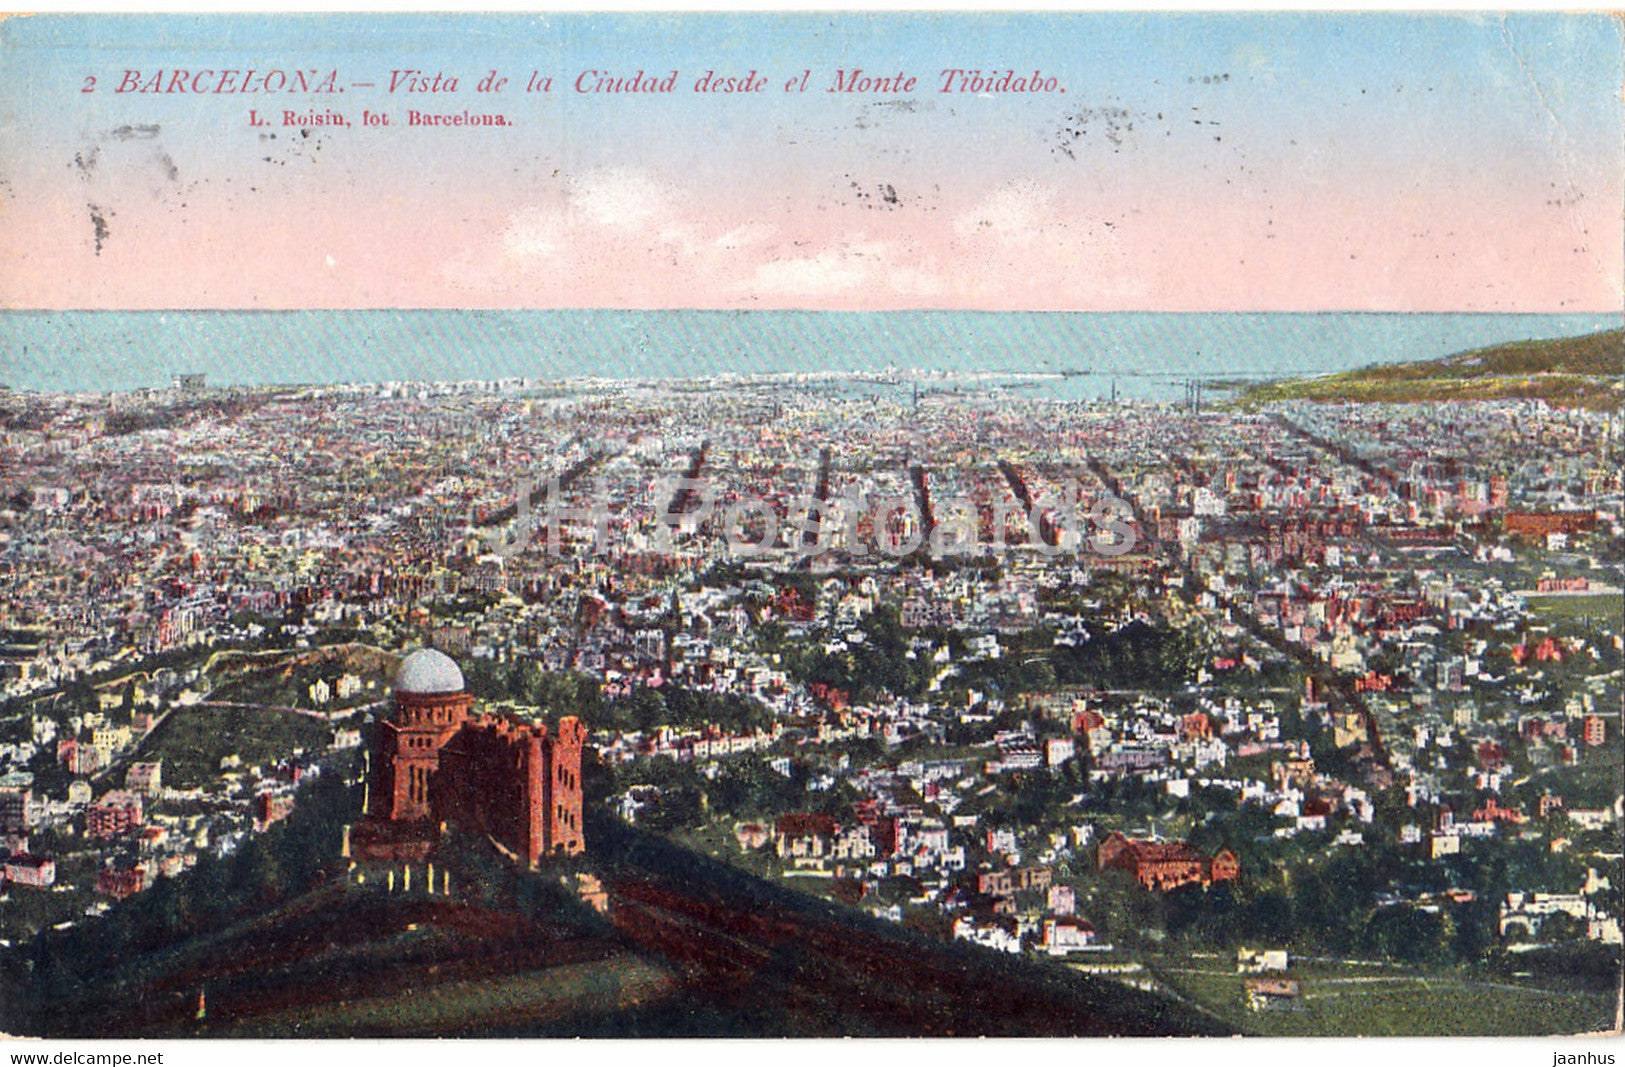 Barcelona - Vista de la Ciudad desde el Monte Tibidabo - 2 - old postcard - 1925 - Spain - used - JH Postcards